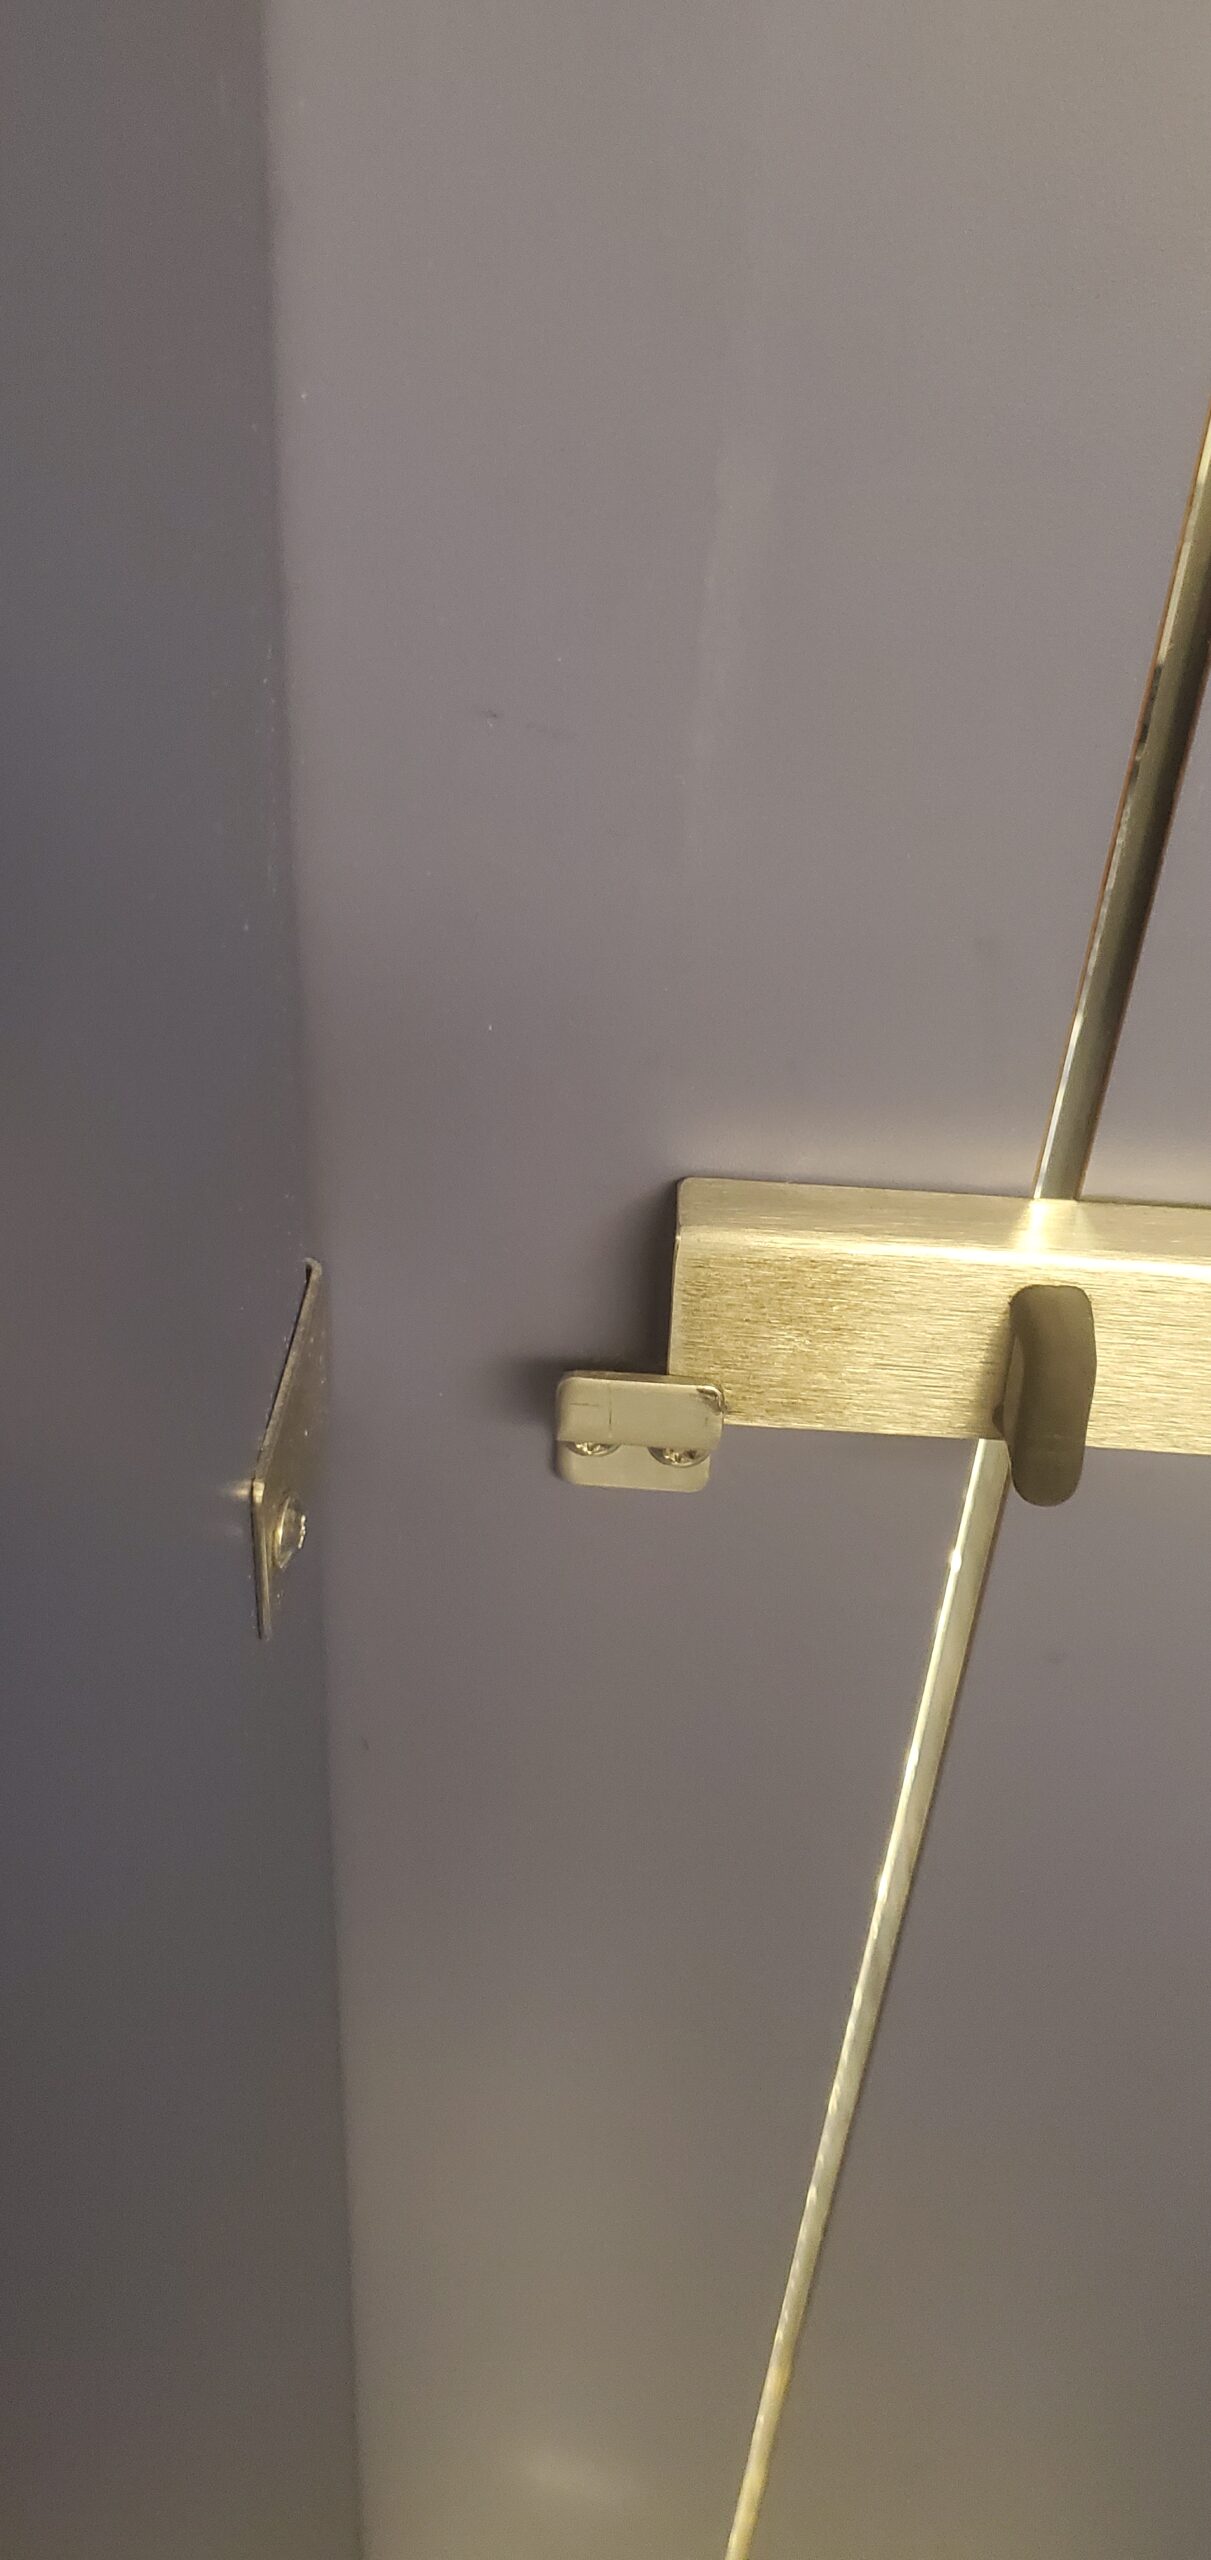 slide cover restroom lock